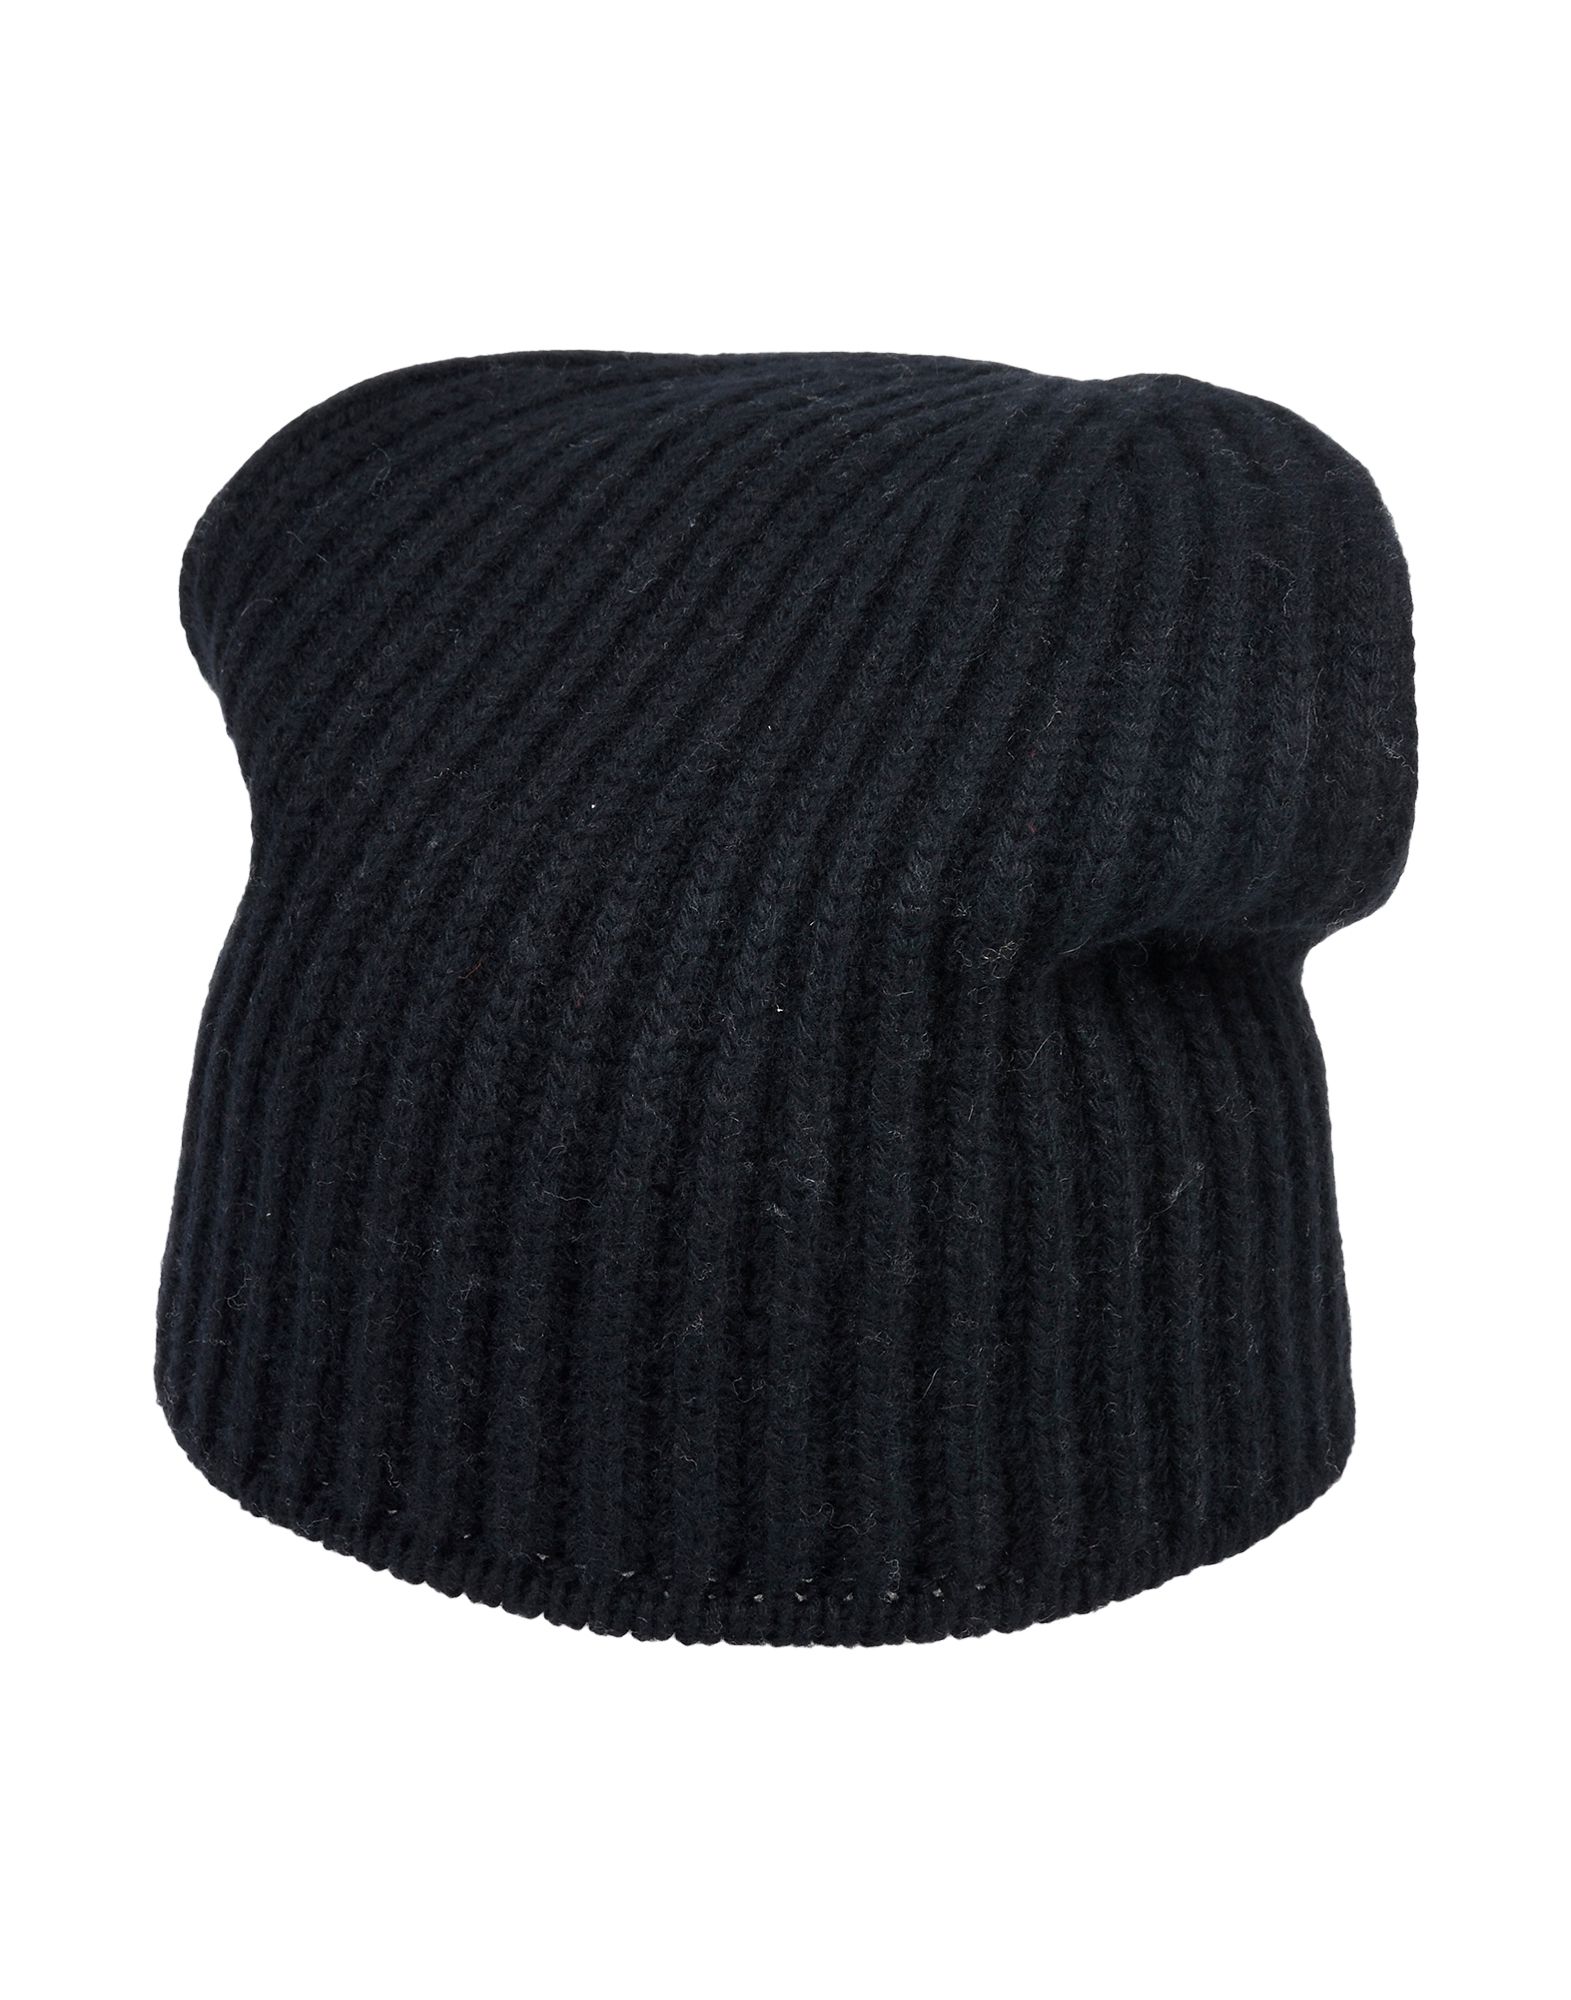 《限定セール中》ARAGONA メンズ 帽子 ブラック カシミヤ 100%